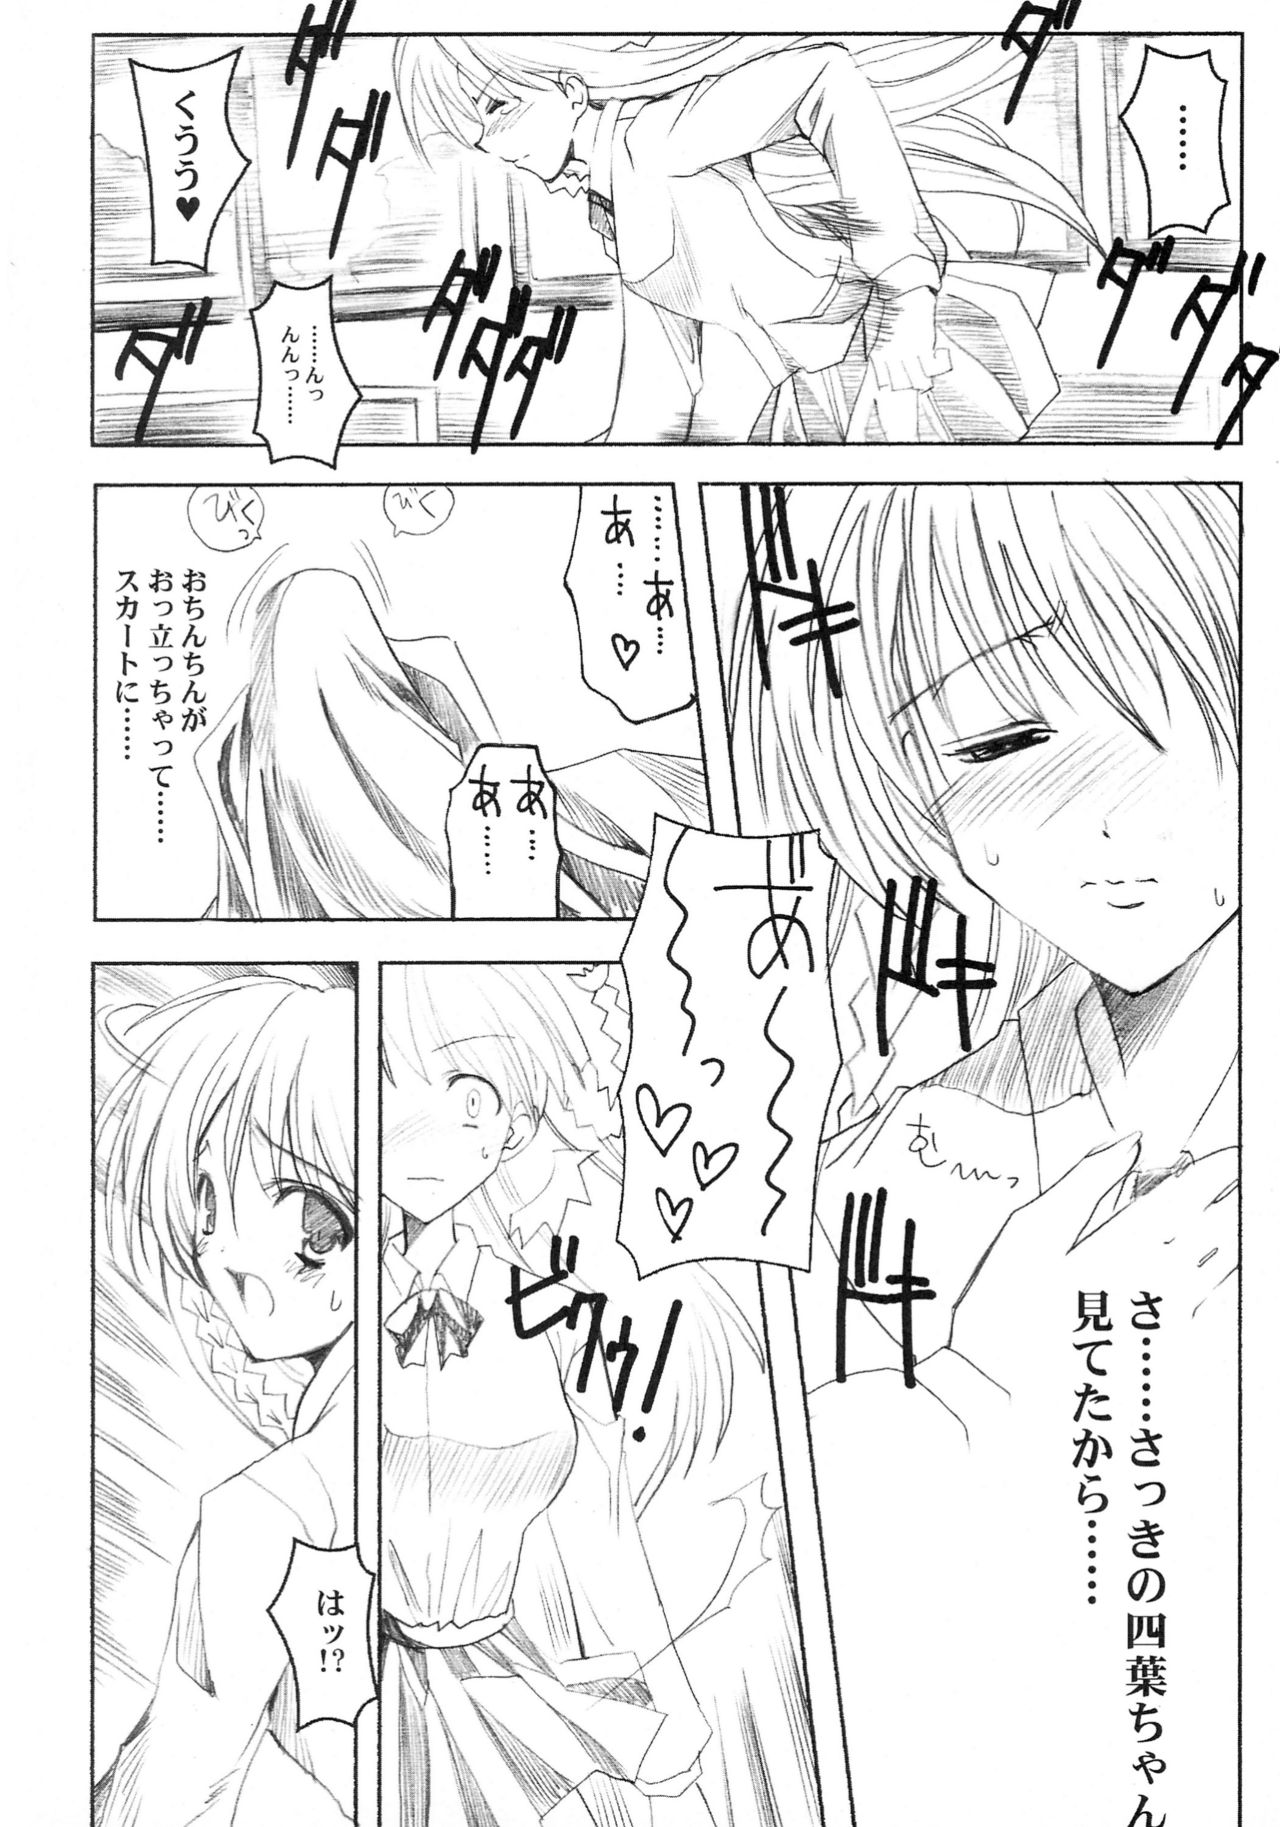 (C60) [HarthNir (Misakura Nankotsu)] Binzume Sisters 1-B (Guilty Gear, Sister Princess) [decensored] (C60) [ハースニール (みさくらなんこつ)] ビンズメシスターズ 瓶詰妹達1-B (ギルティギア、シスタープリンセス) [無修正]